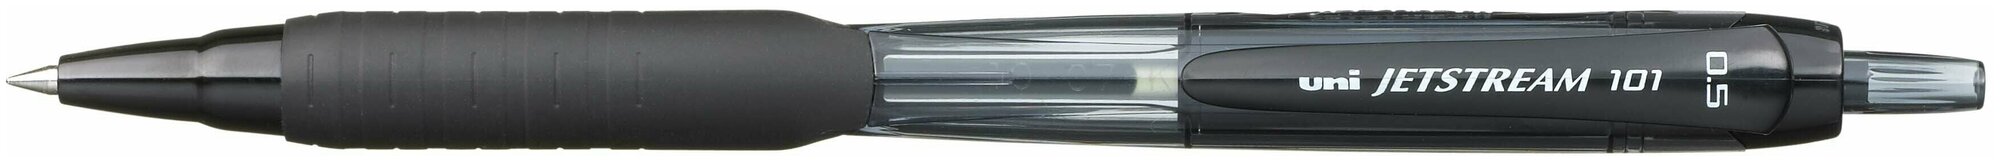 Ручка шариковая UNI Jetstream SXN-101-07, 0,7мм, автомат, с резиновым упором, черная 68416(3 шт. в упаковке)